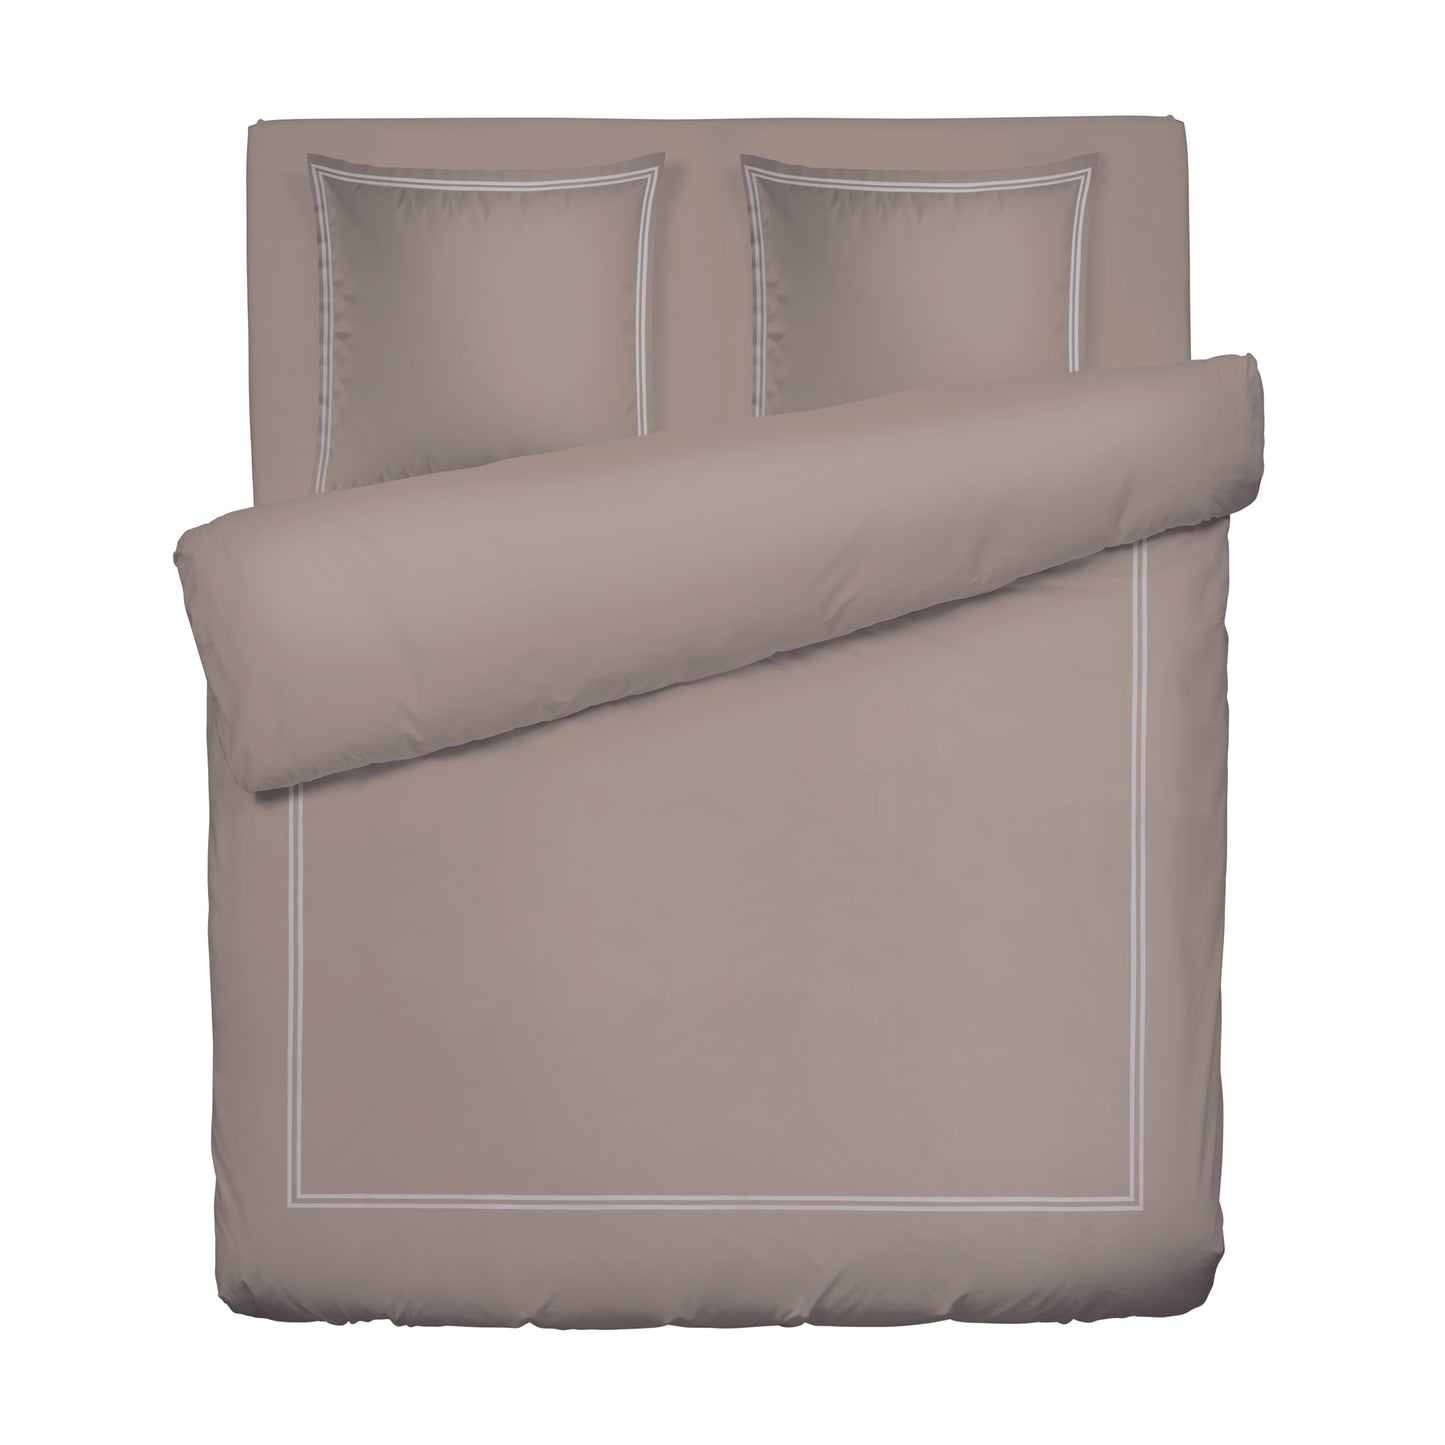 Duvet cover + pillowcase(s) cotton satin - Saint-Tropez Taupe / White